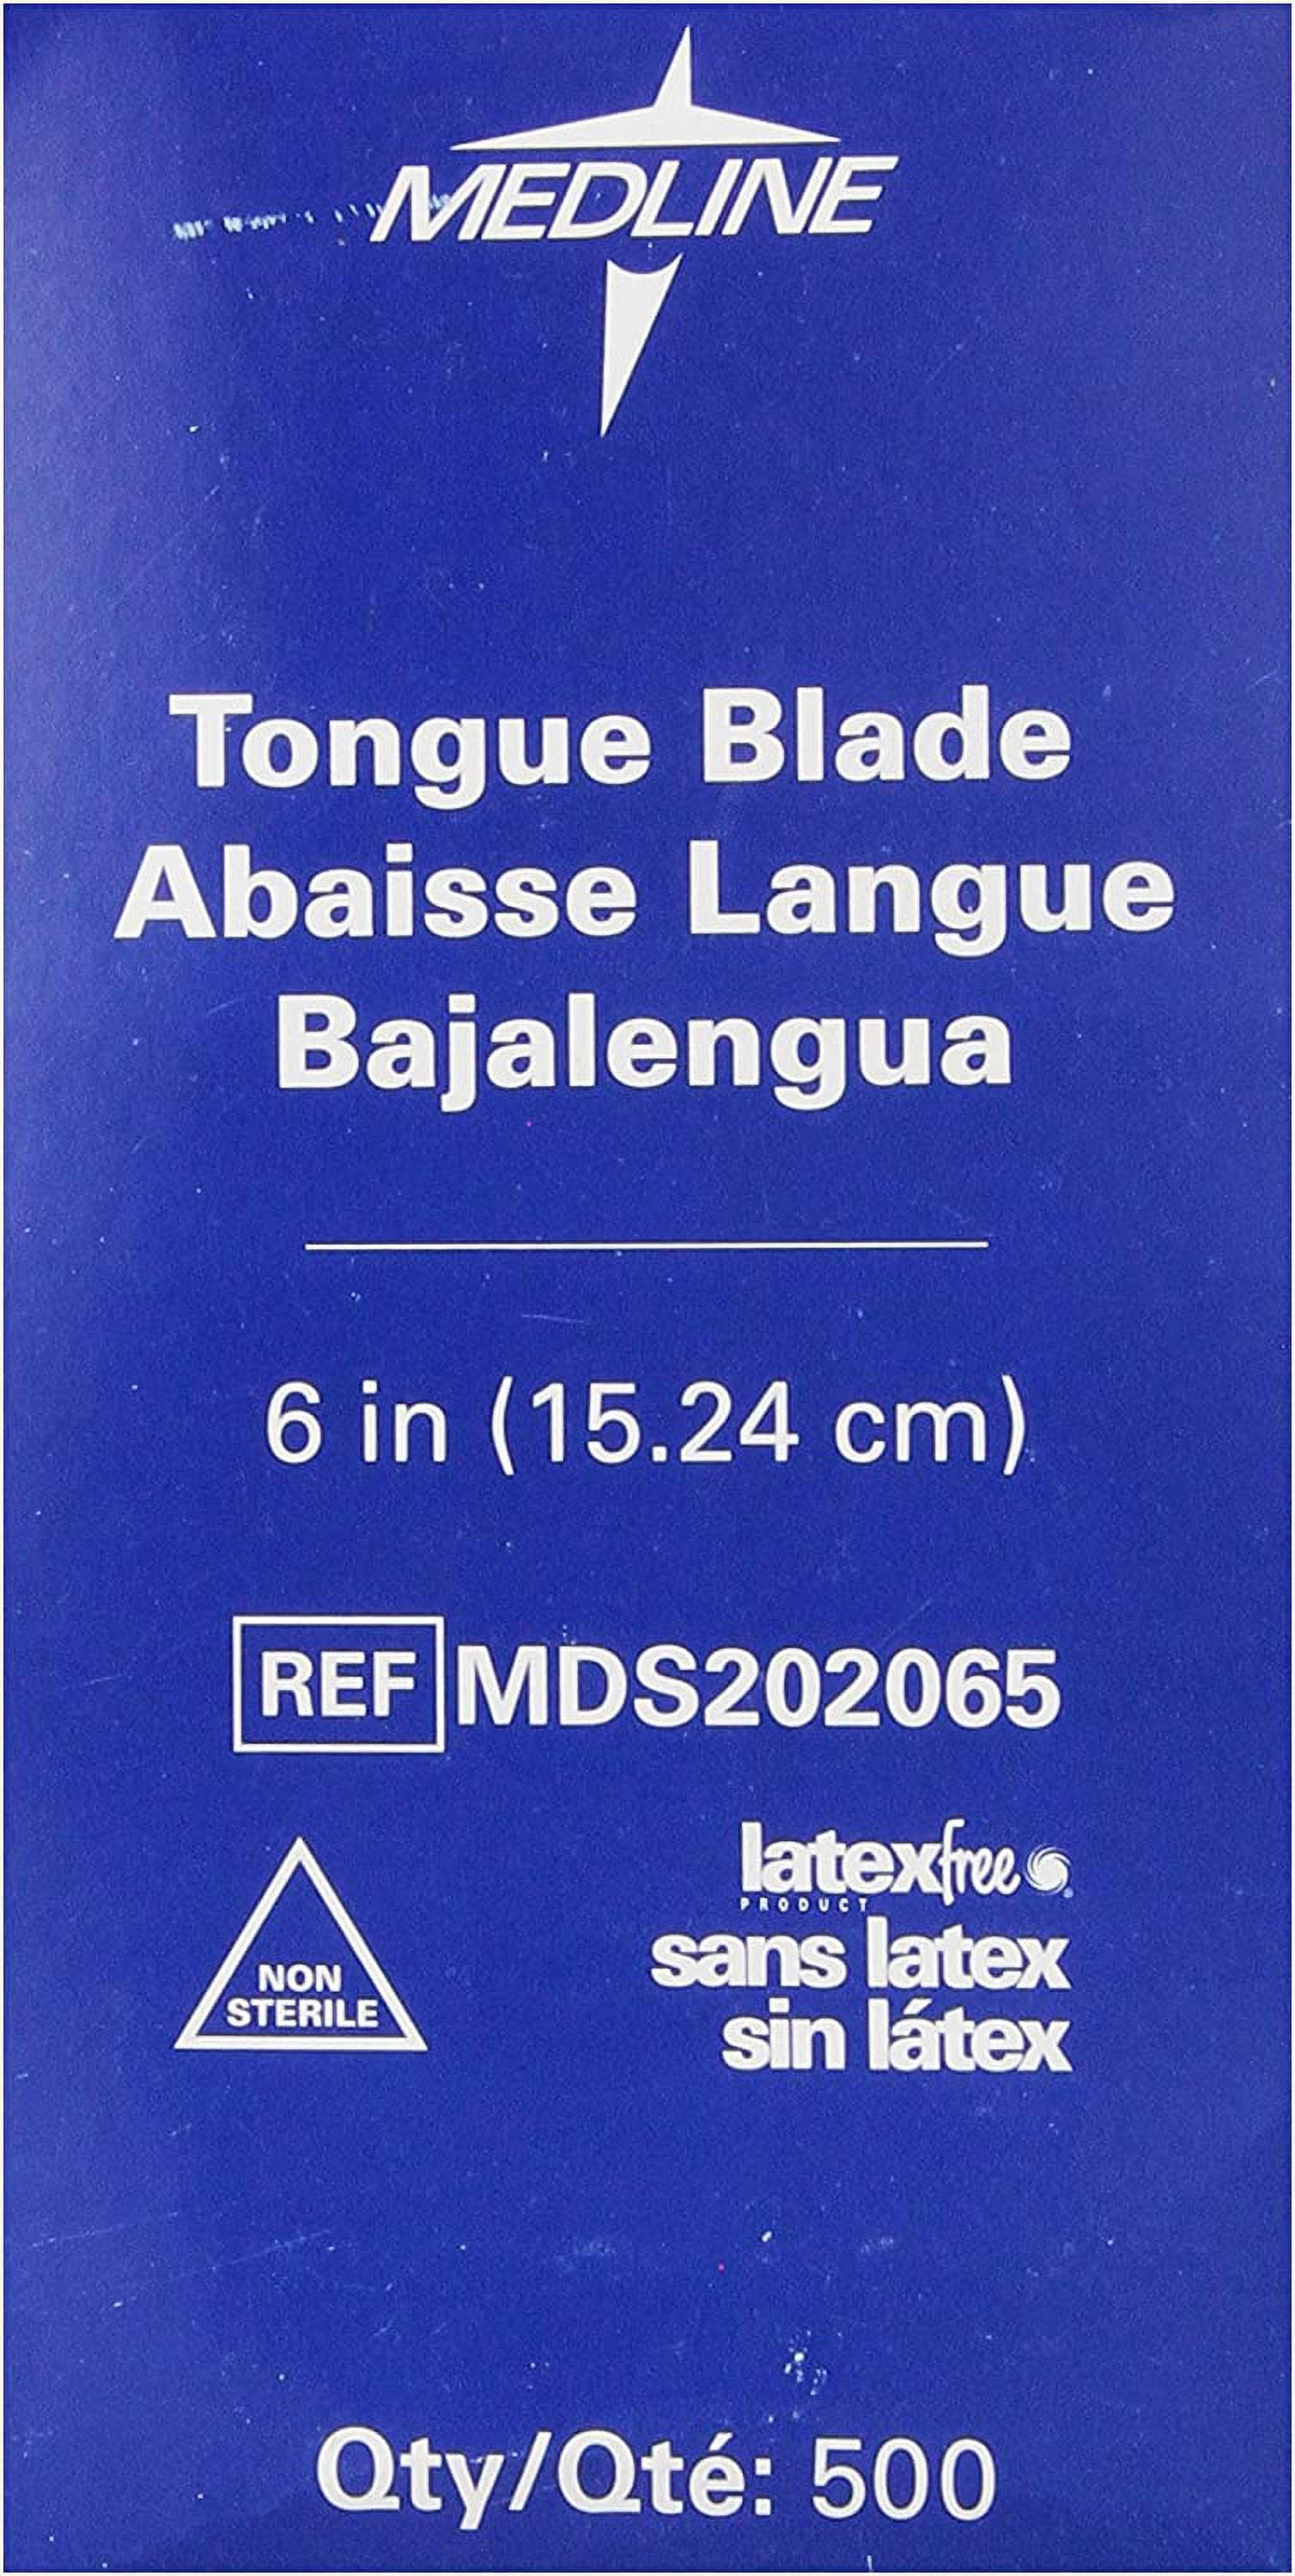 Nonsterile Tongue Depressors - Medline MDS202065, MDS202065H